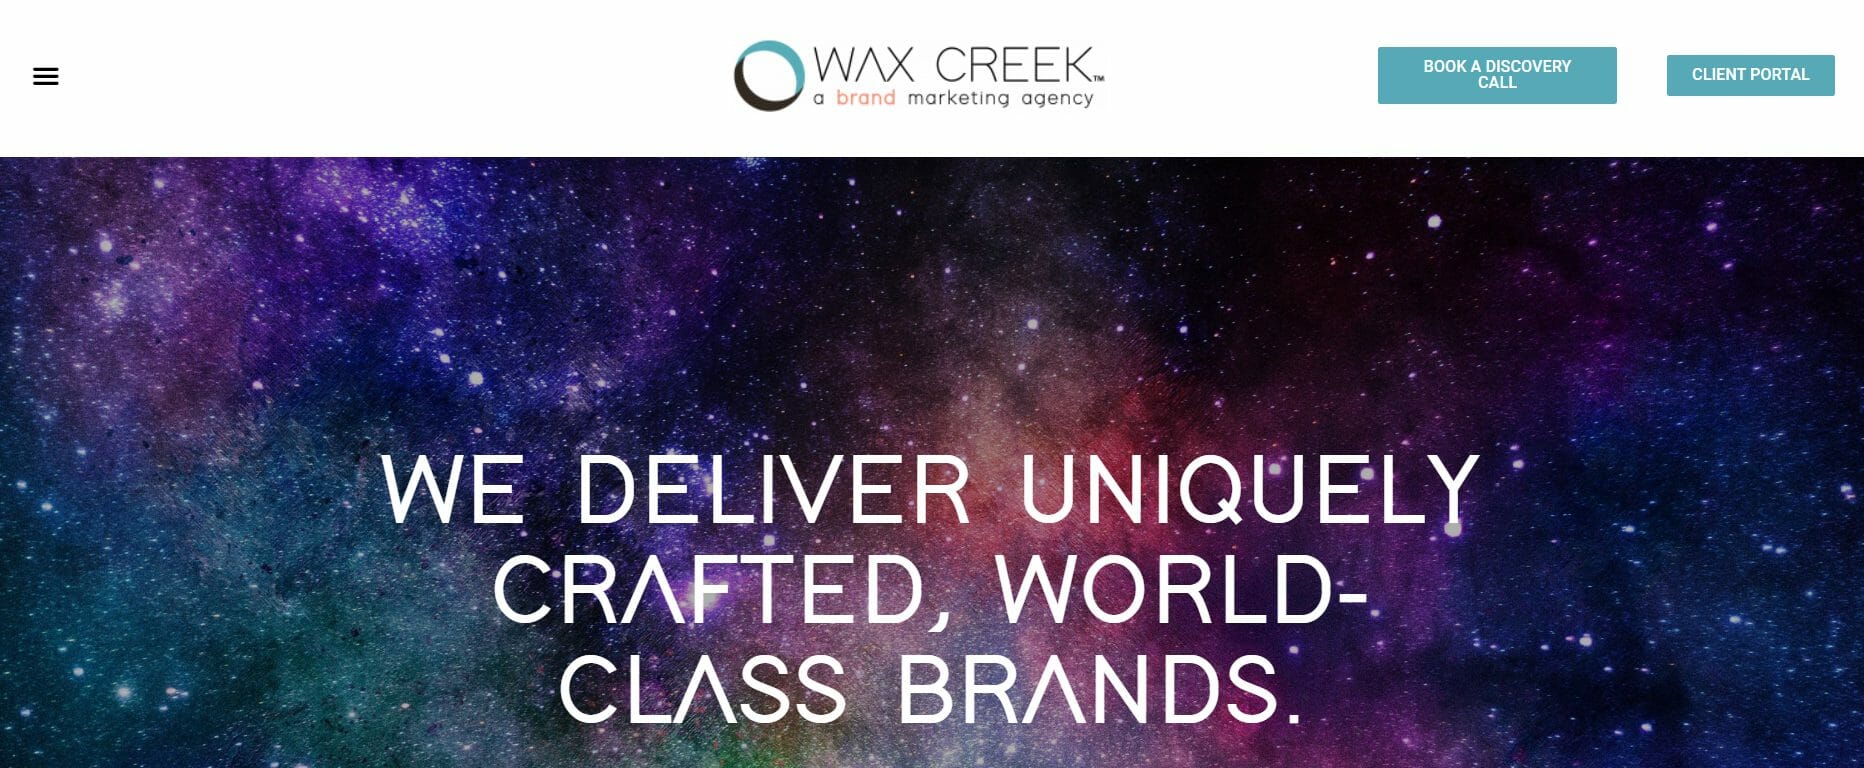 Wax Creek